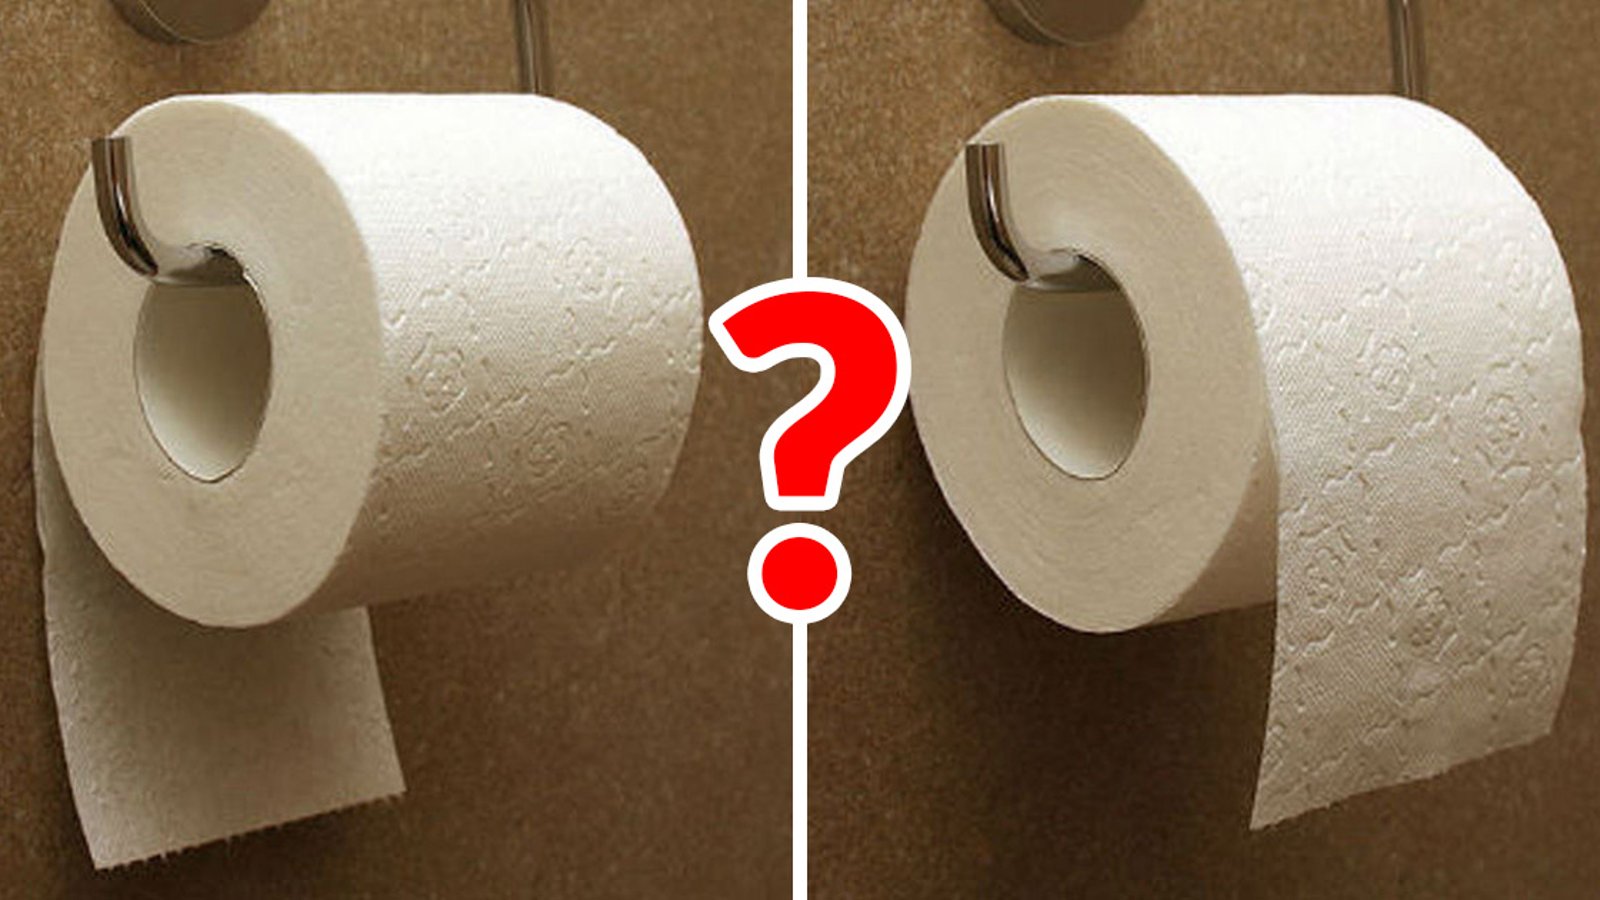 Faut-il placer le rouleau de papier de toilette feuilles par-dessus ou sur le dessous? La réponse date de 128 ans!